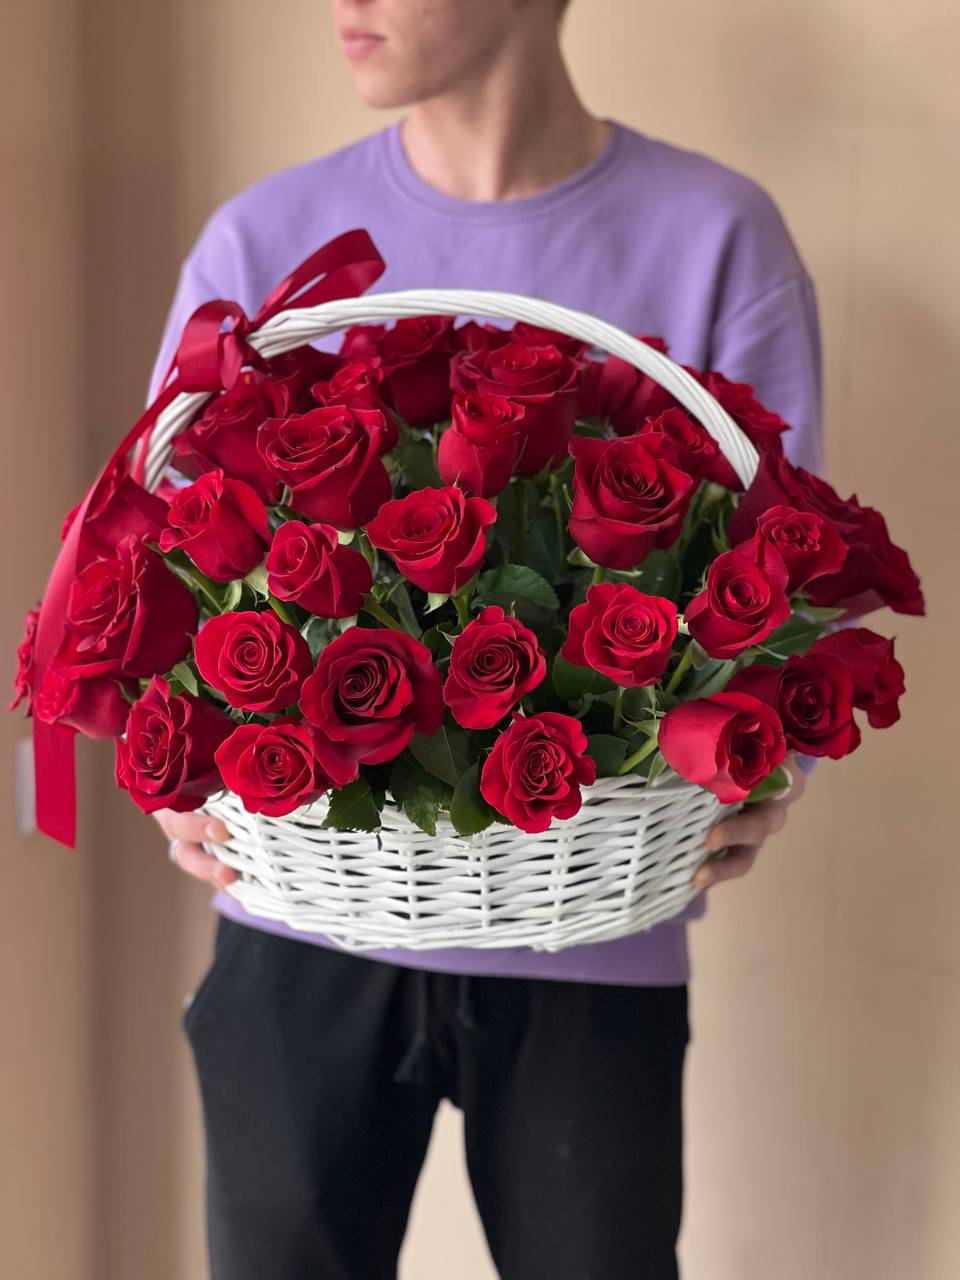 51 красная Роза в Корзине ❤️ с доставкой по Алматы